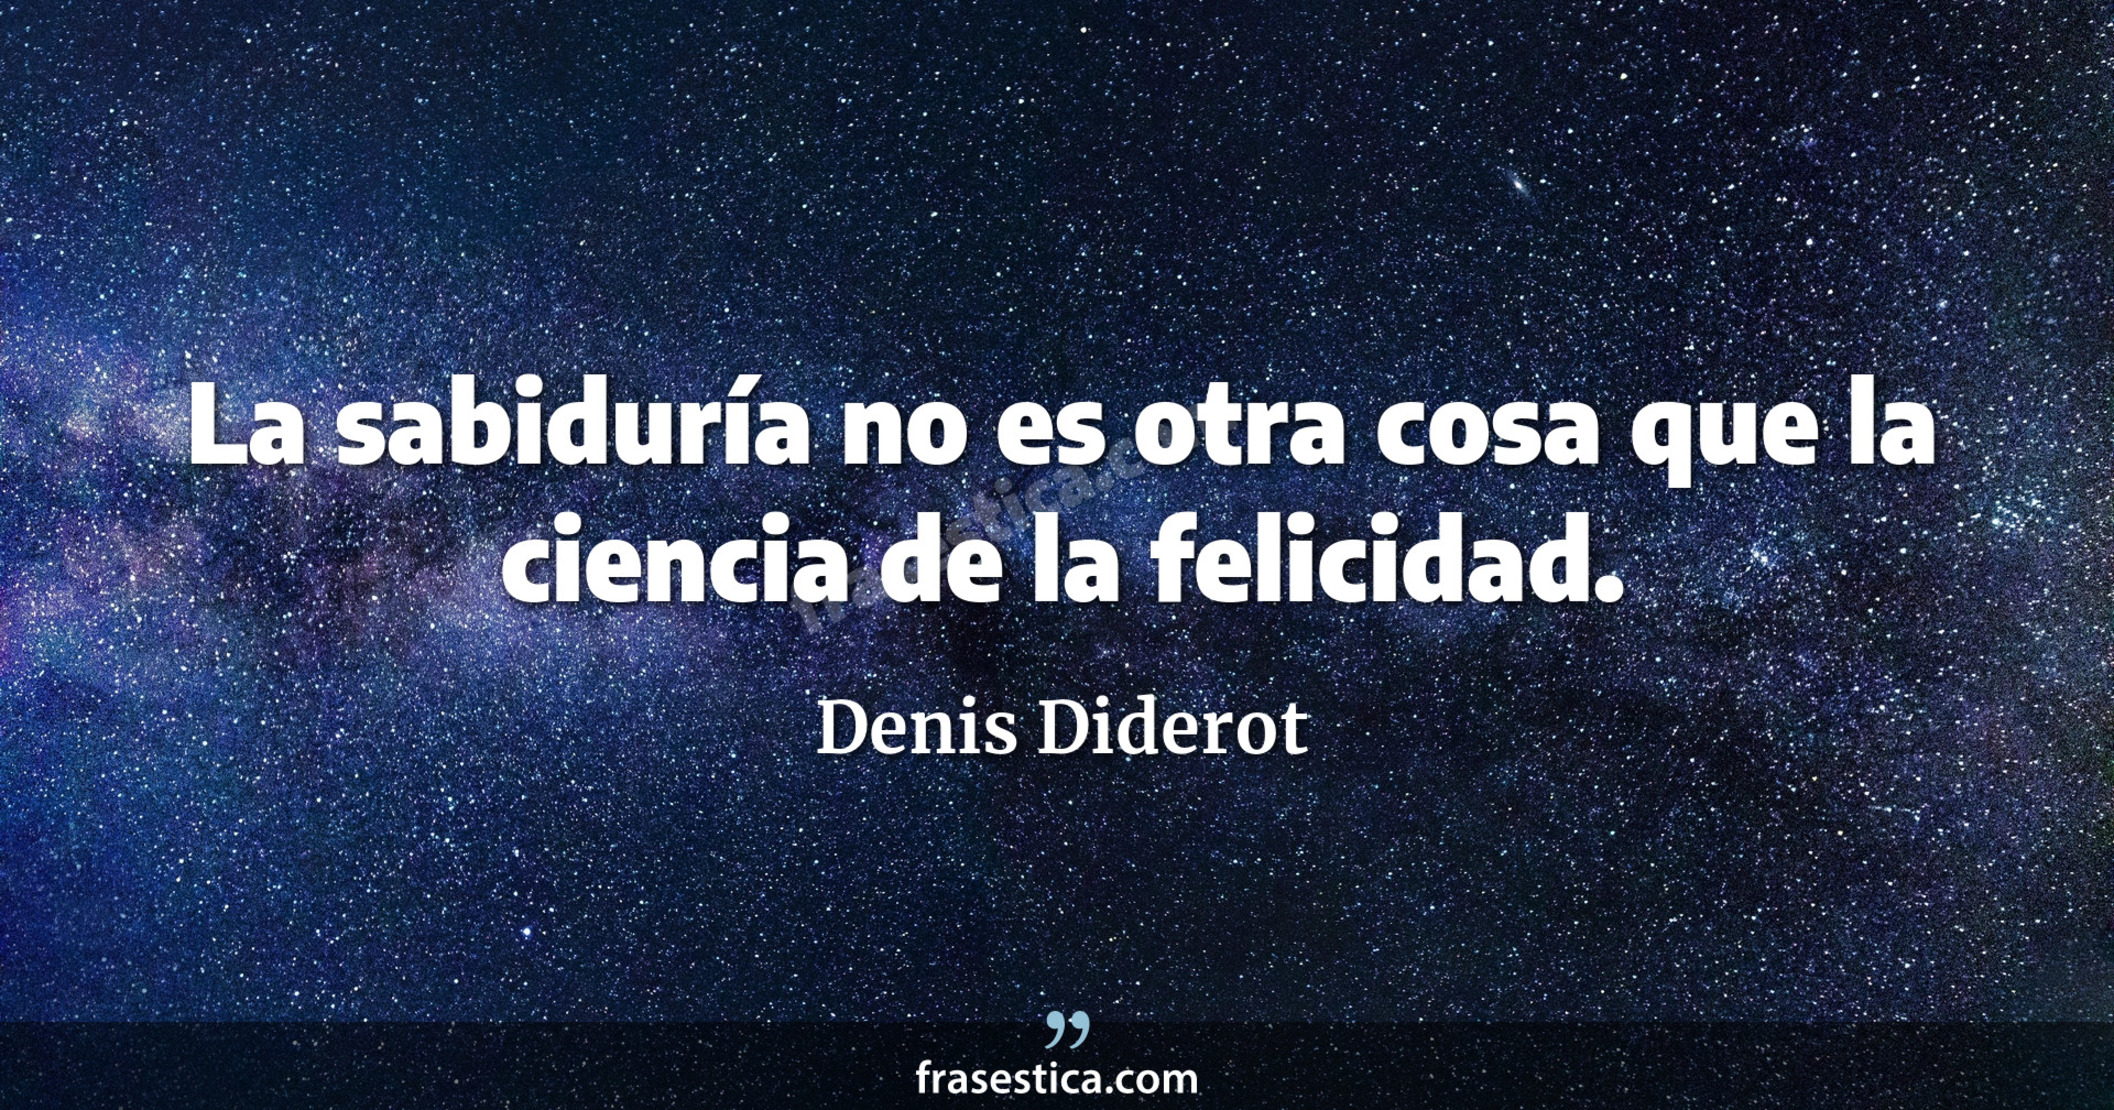 La sabiduría no es otra cosa que la ciencia de la felicidad. - Denis Diderot